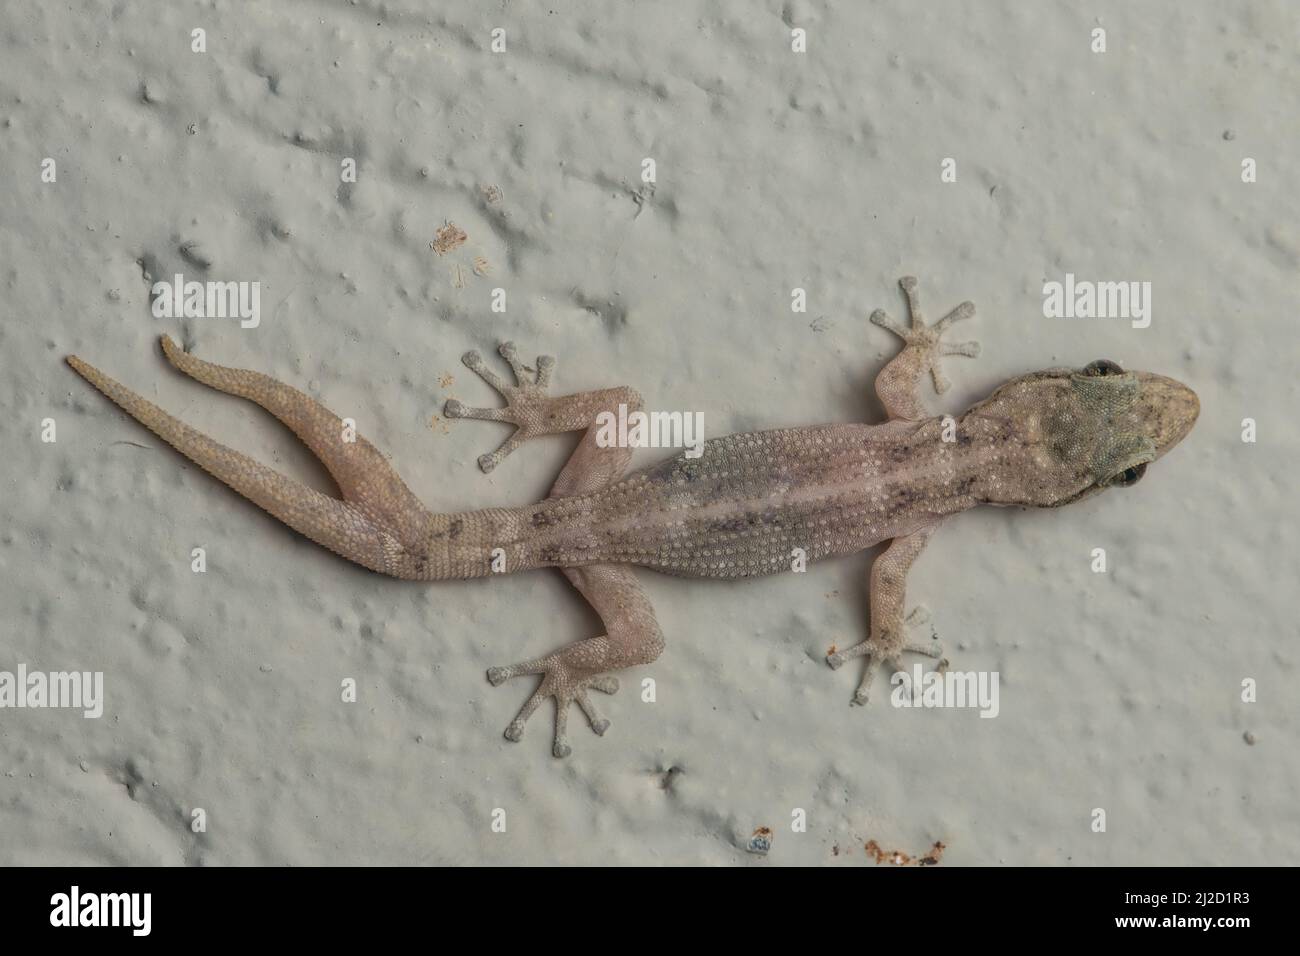 Un gecko de hoja costera (Phyllodactylus reissii) en Ecuador con regeneración anormal de la cola donde la cola se ha dividido, resultando en una cola forked. Foto de stock